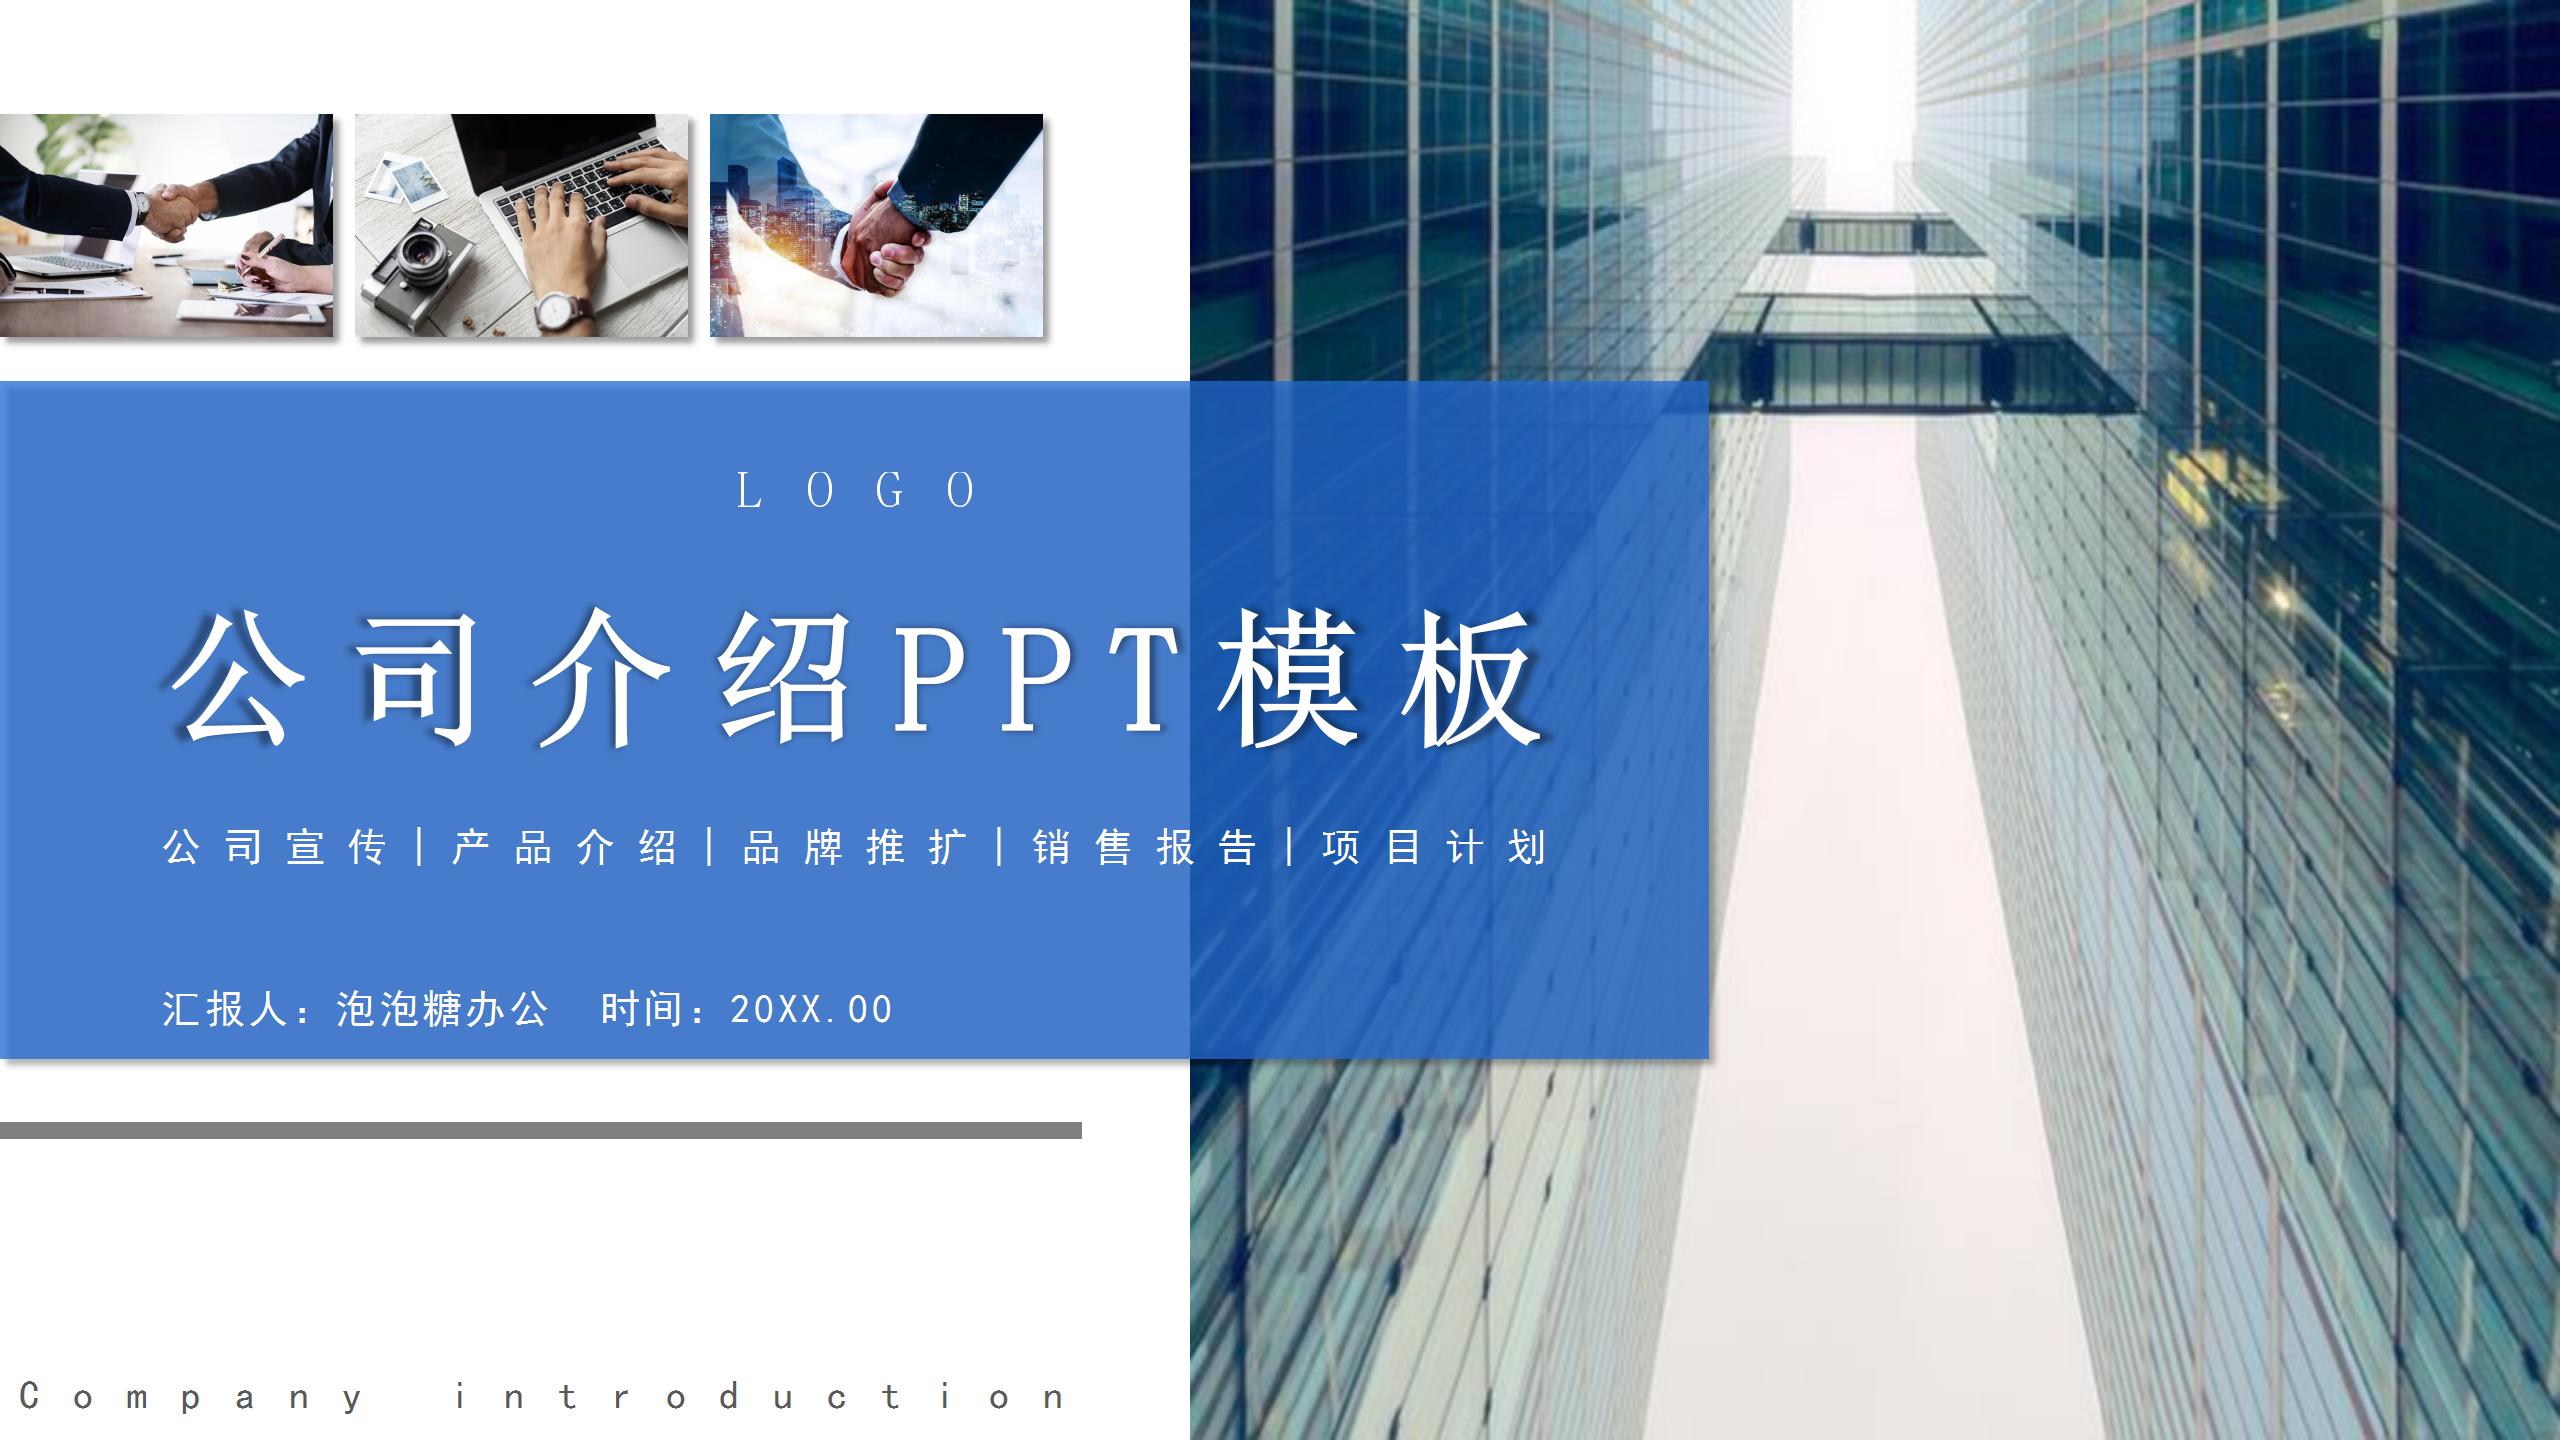 蓝色商务简约公司介绍产品推广 营销策划PPT模板